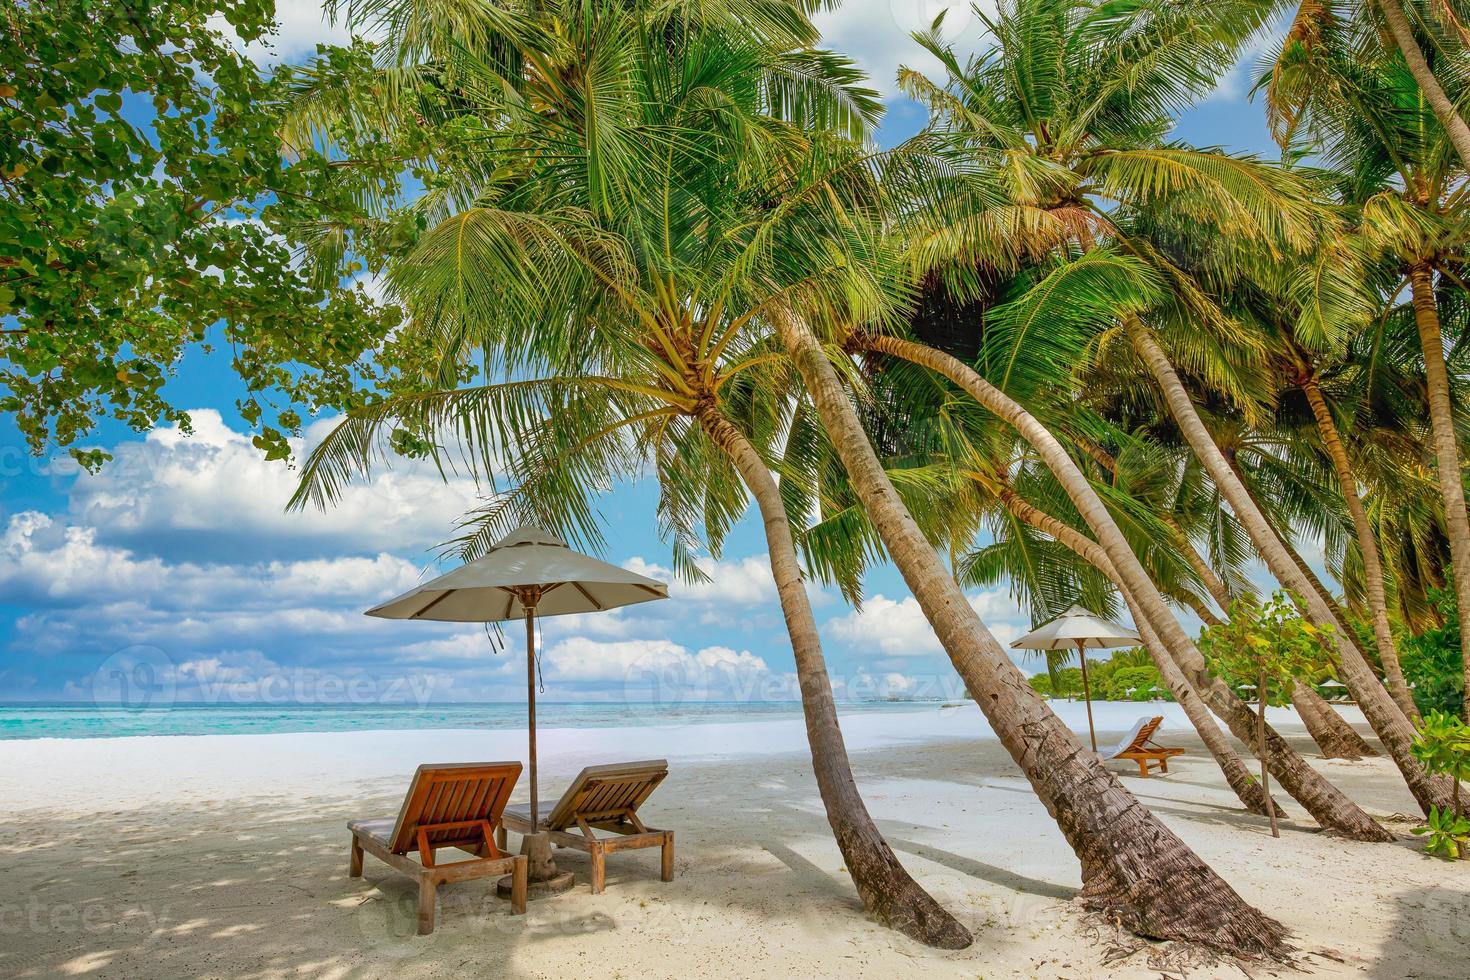 naturaleza de playa tropical como paisaje de verano con tumbonas y palmeras y mar tranquilo para la pancarta de playa. lujoso paisaje de viaje, hermoso destino para vacaciones o vacaciones. escena de la playa foto